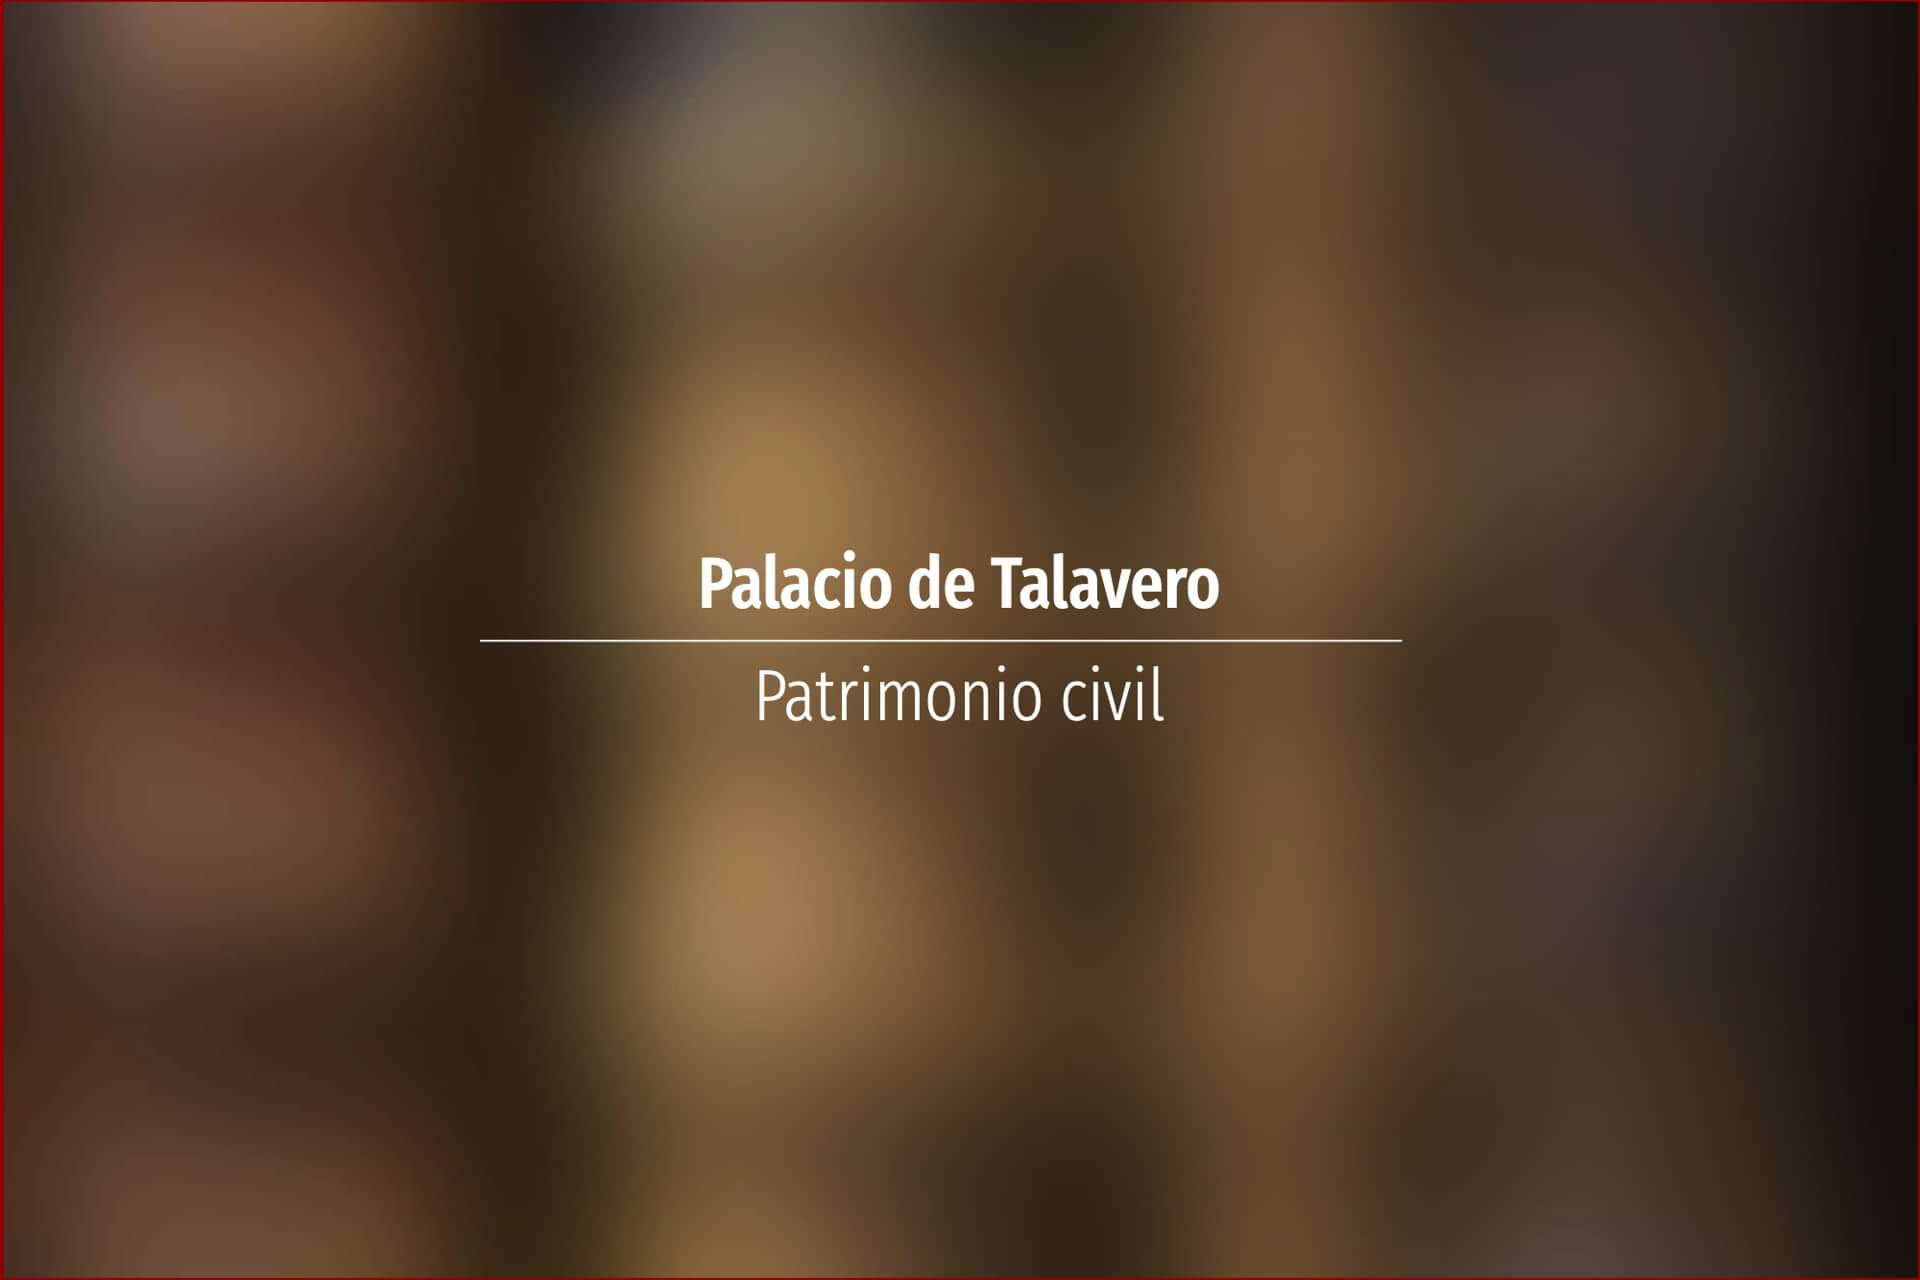 Palacio de Talavero